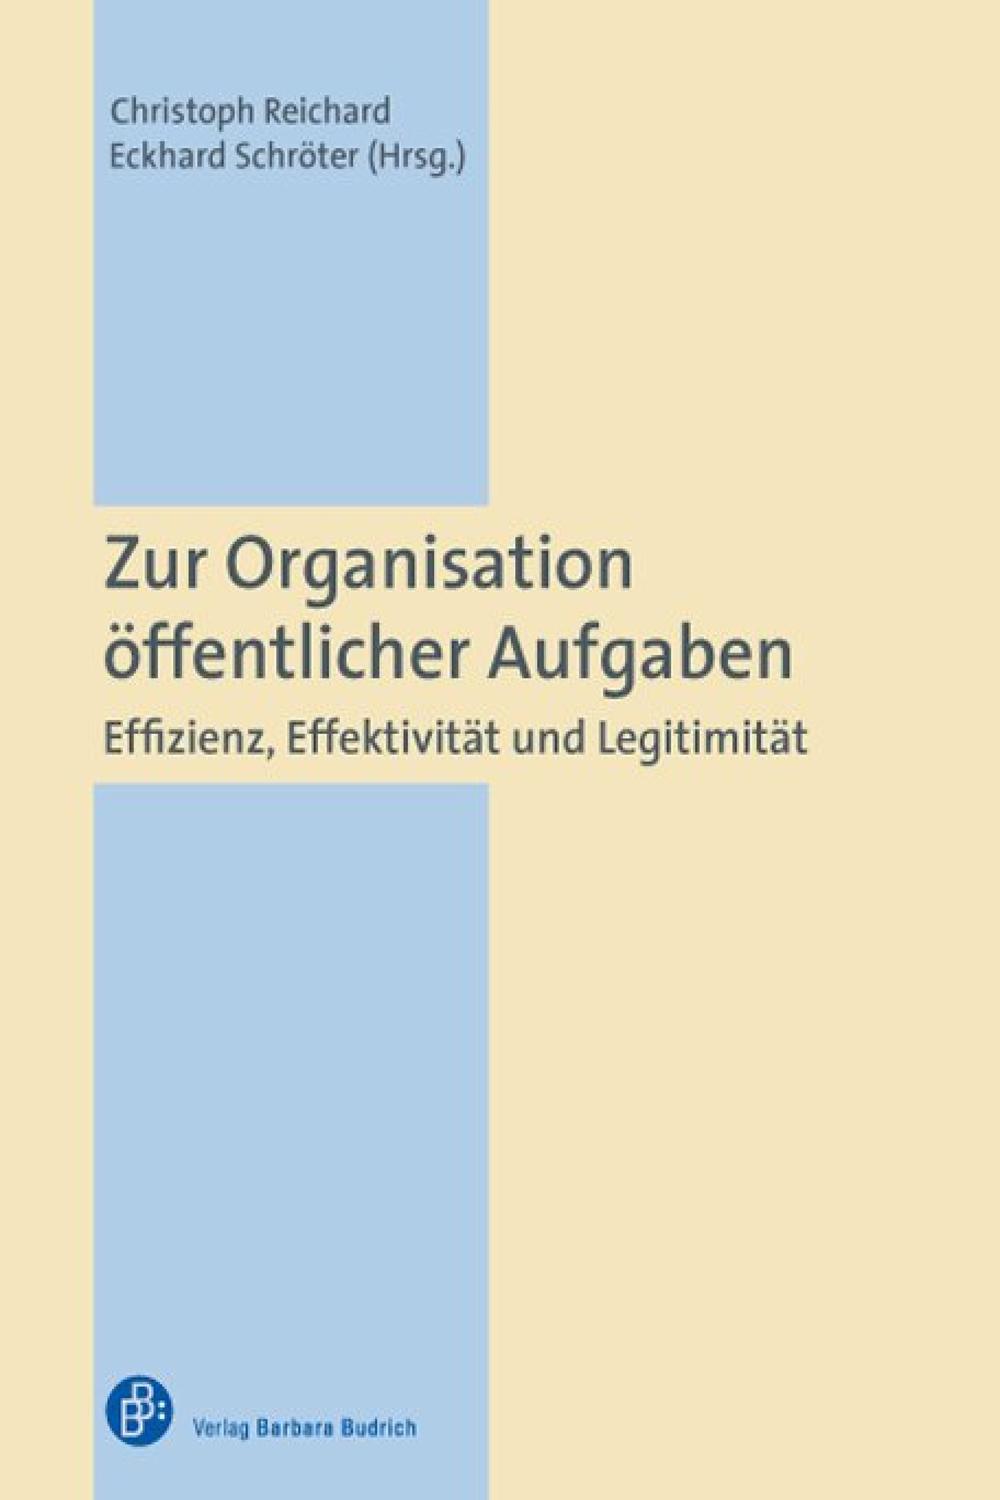 Zur Organisation öffentlicher Aufgaben - Christoph Reichard, Eckhard Schröter